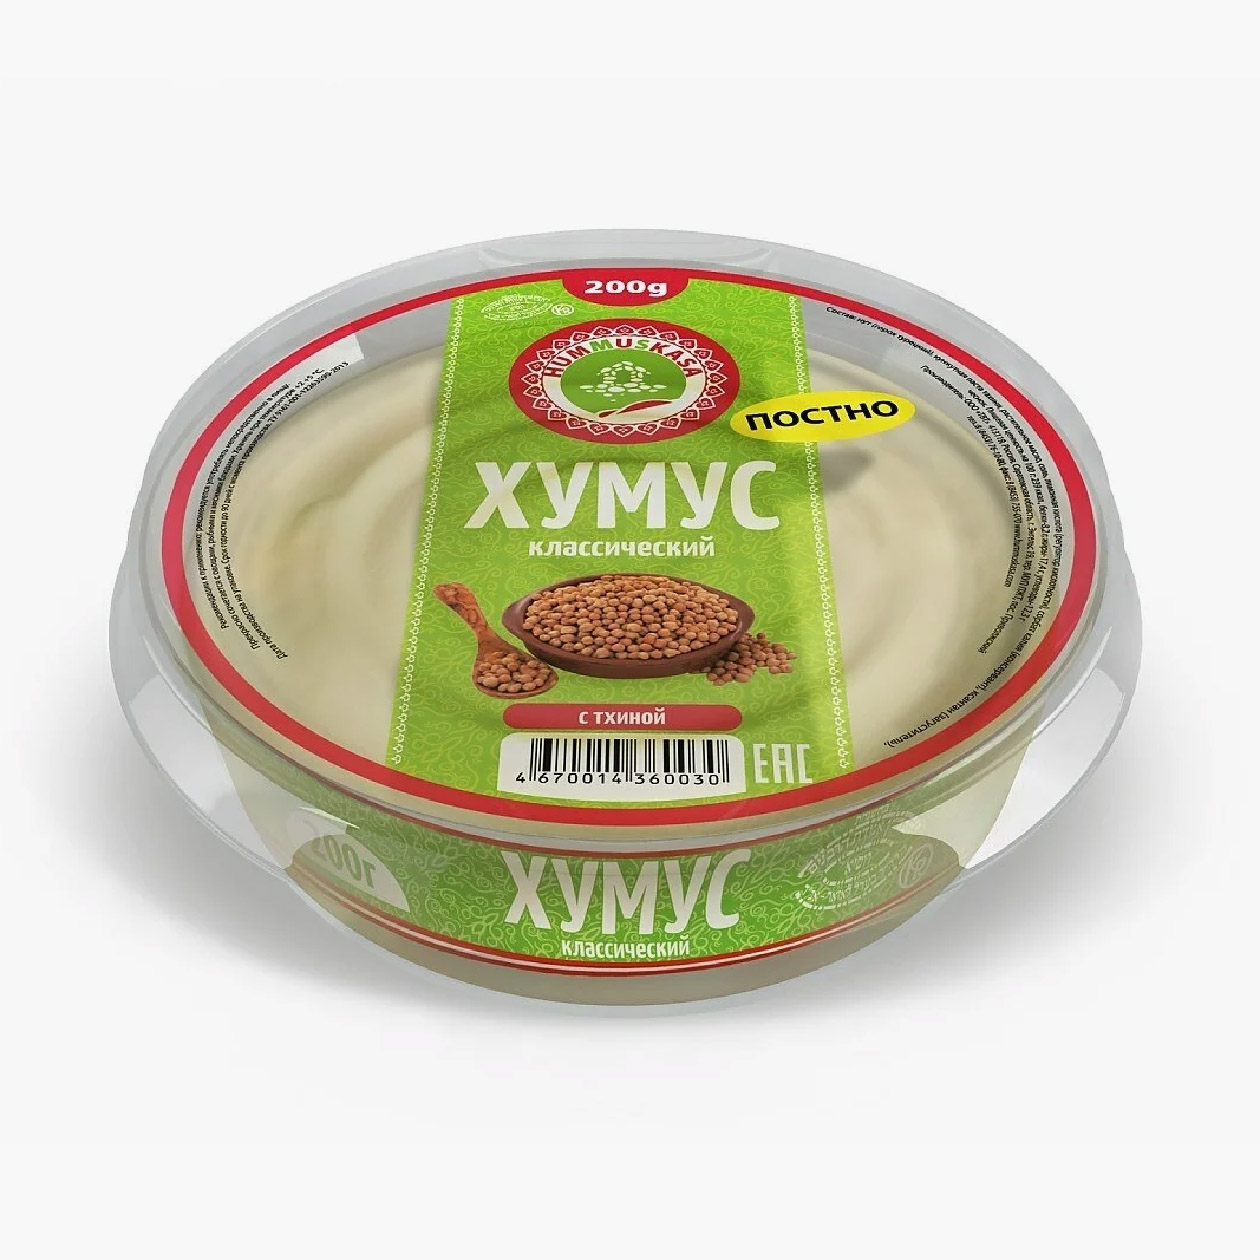 Варианты хумуса с оптимальным составом и невысоким содержанием жиров